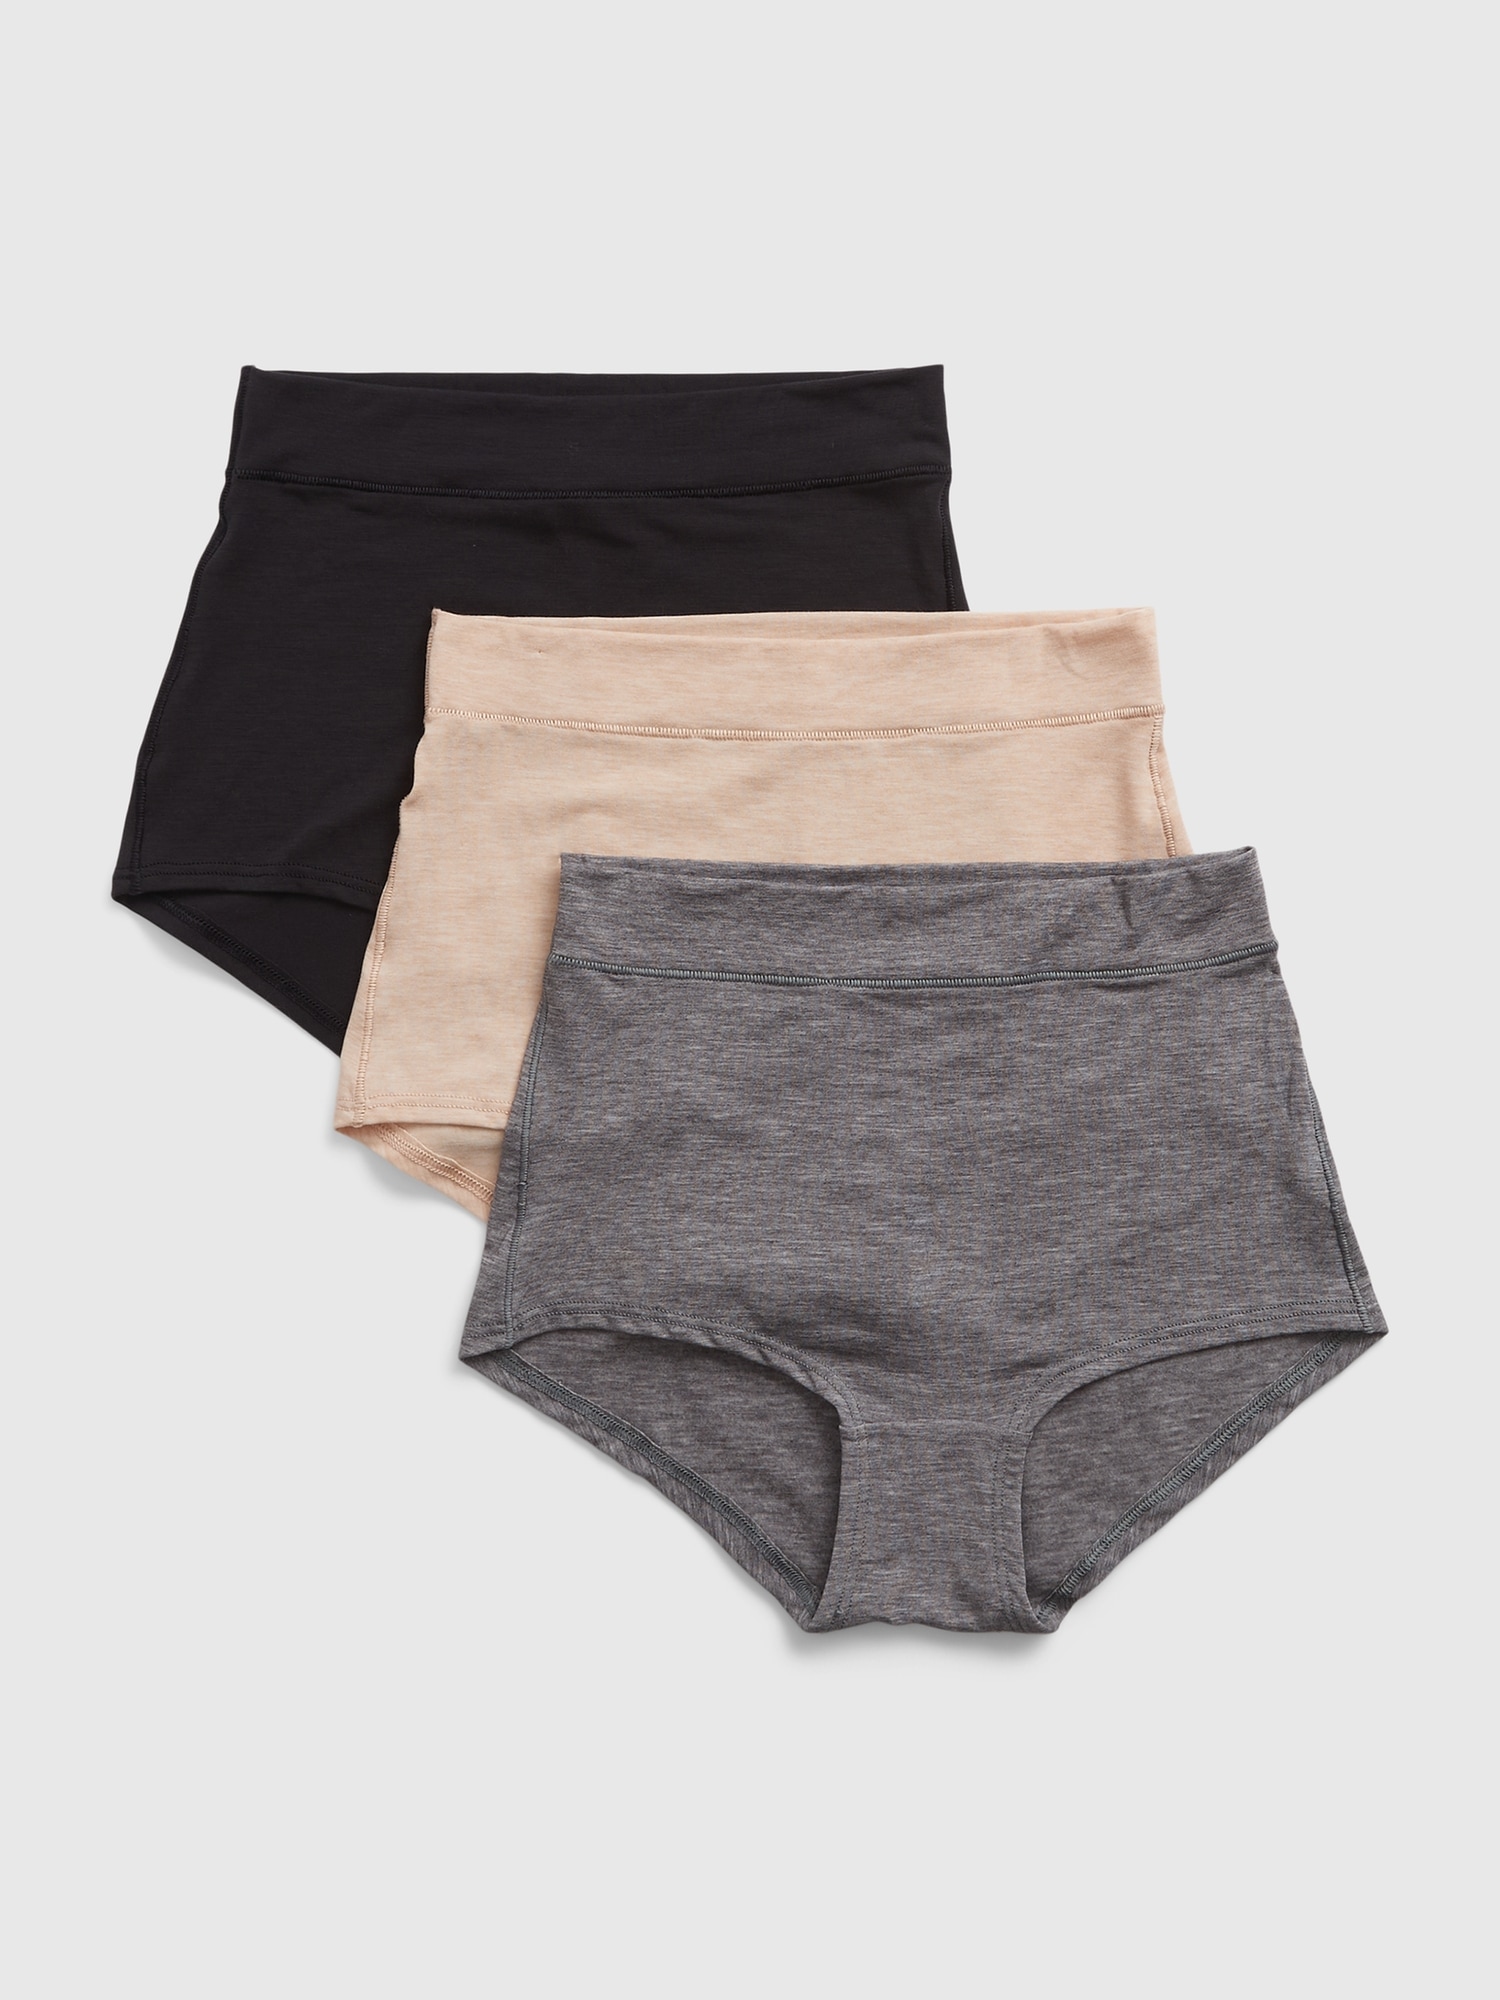 Linen panties, High waisted briefs - Inspire Uplift